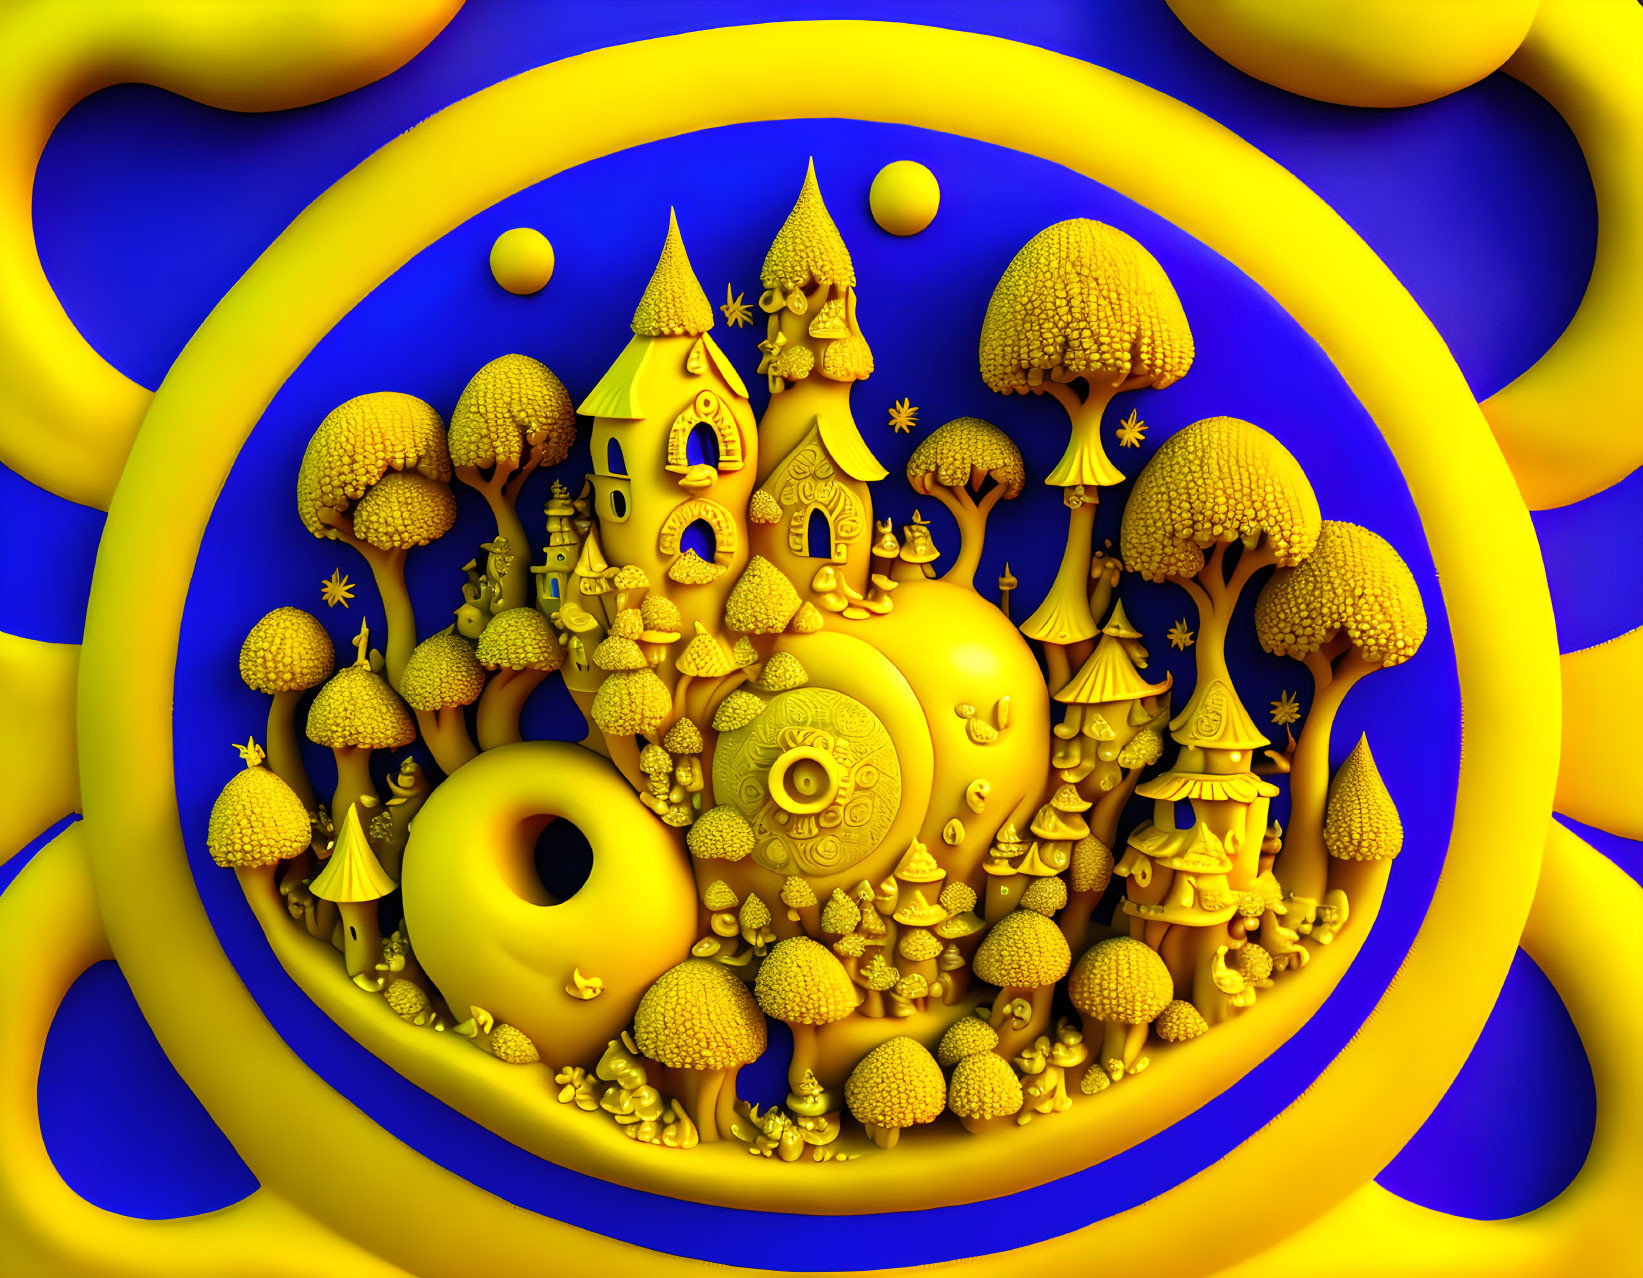 Colorful 3D fractal image of whimsical fantasy landscape